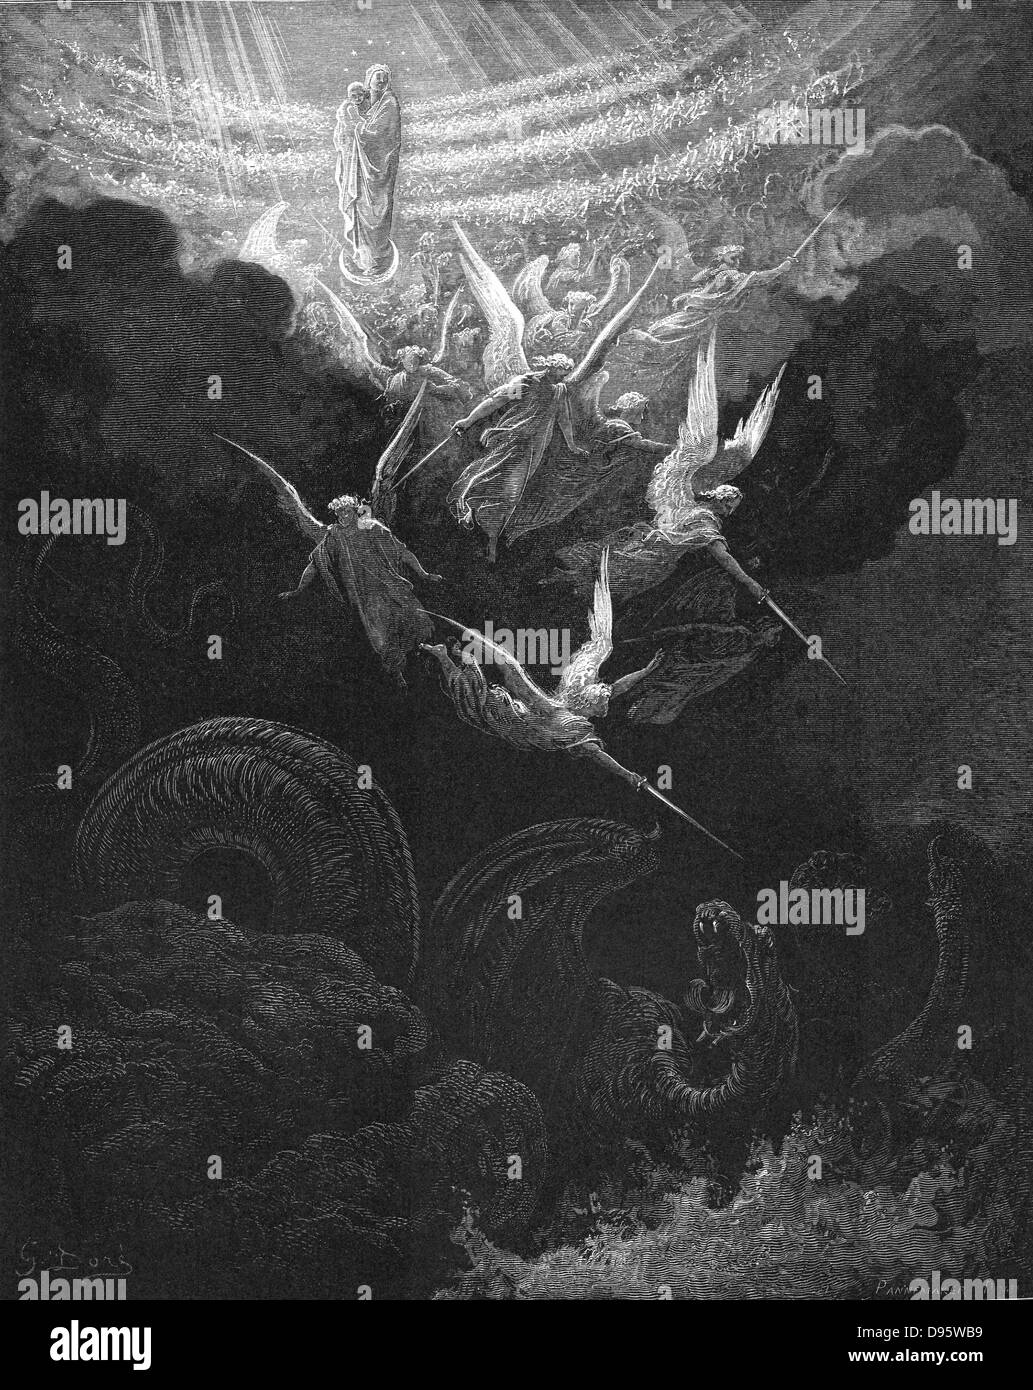 L'Arcangelo Michele e i suoi angeli lottano contro il drago. Vergine Maria con Gesù bambino nelle braccia guarda dal cielo. Apocalisse 12:1. Da Gustave Dore "bibbia" 1865-1866. Incisione su legno. Foto Stock